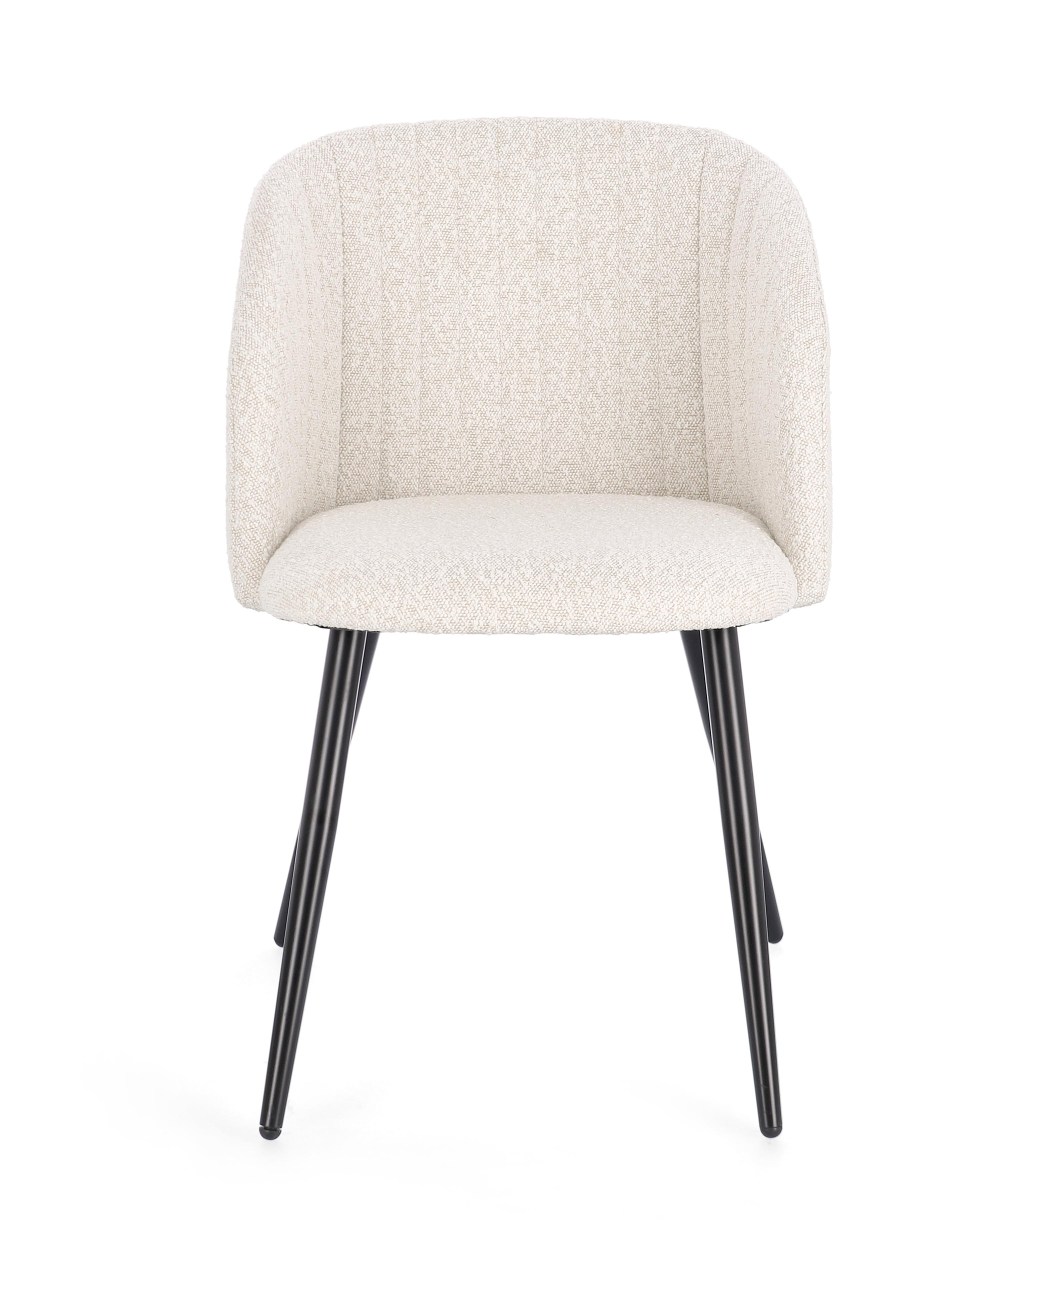 Der Esszimmerstuhl Queen überzeugt mit seinem modernen Stil. Gefertigt wurde er aus Boucle-Stoff, welcher einen Beigen Farbton besitzt. Das Gestell ist aus Metall und hat eine Schwarzen Farbe. Der Stuhl besitzt eine Sitzhöhe von 49 cm.